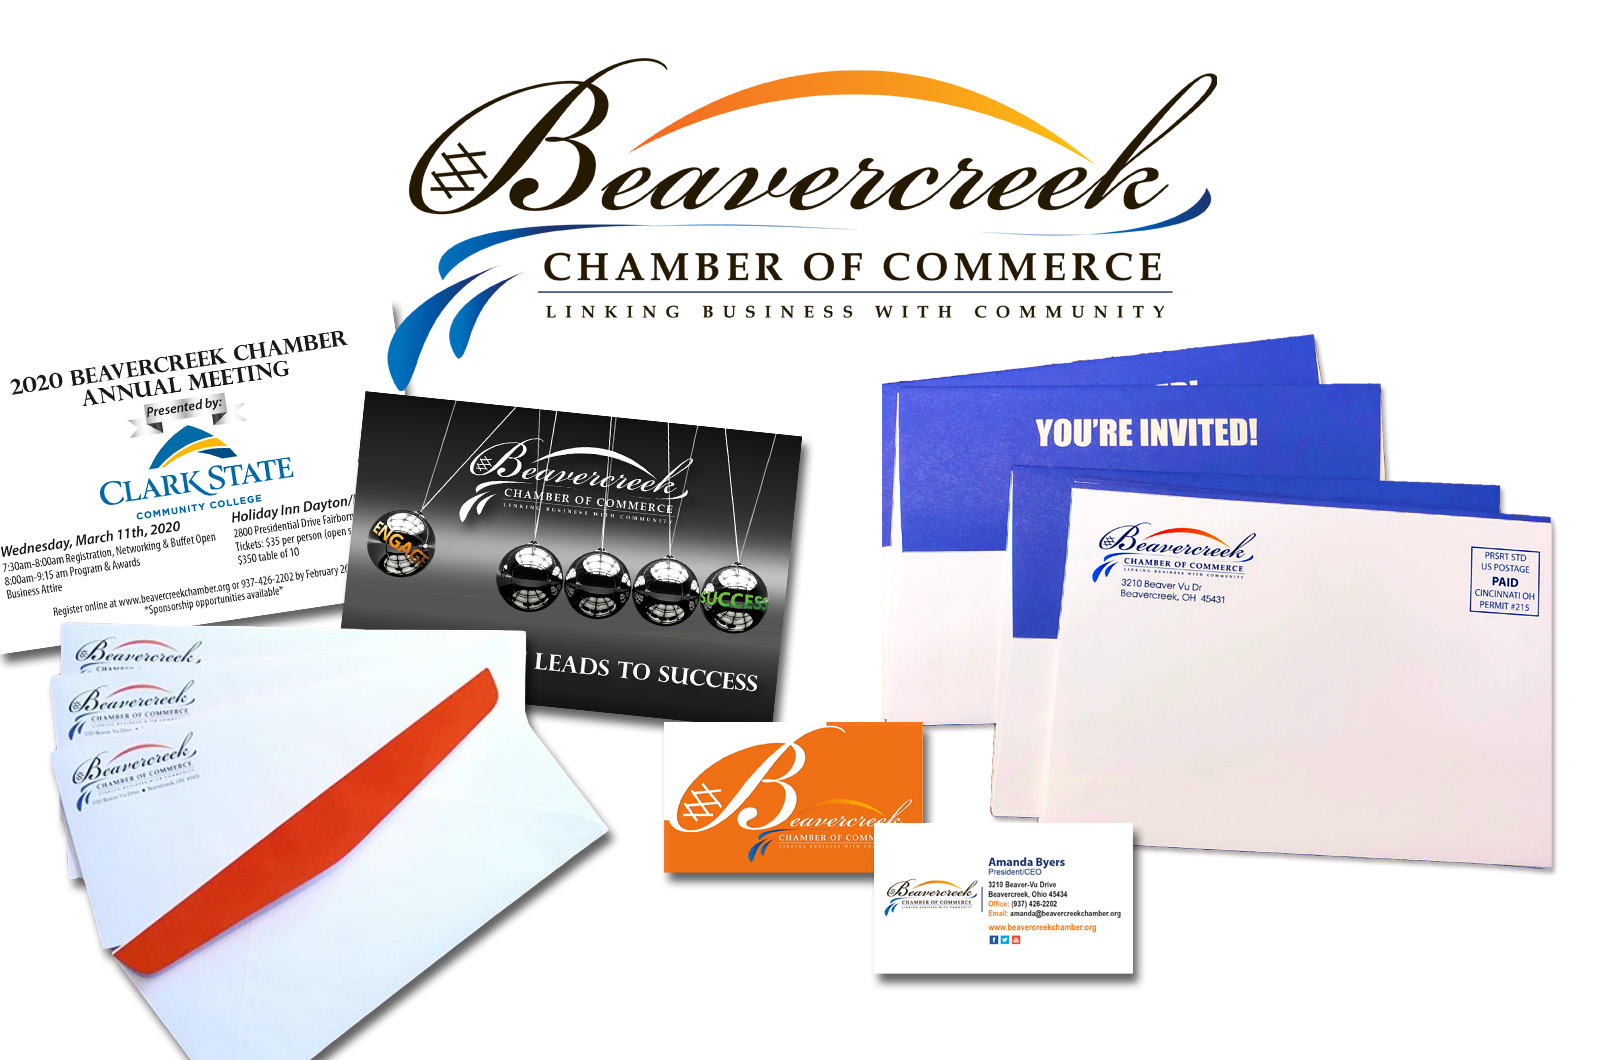 Customer Spotlight: Beavercreek Chamber of Commerce